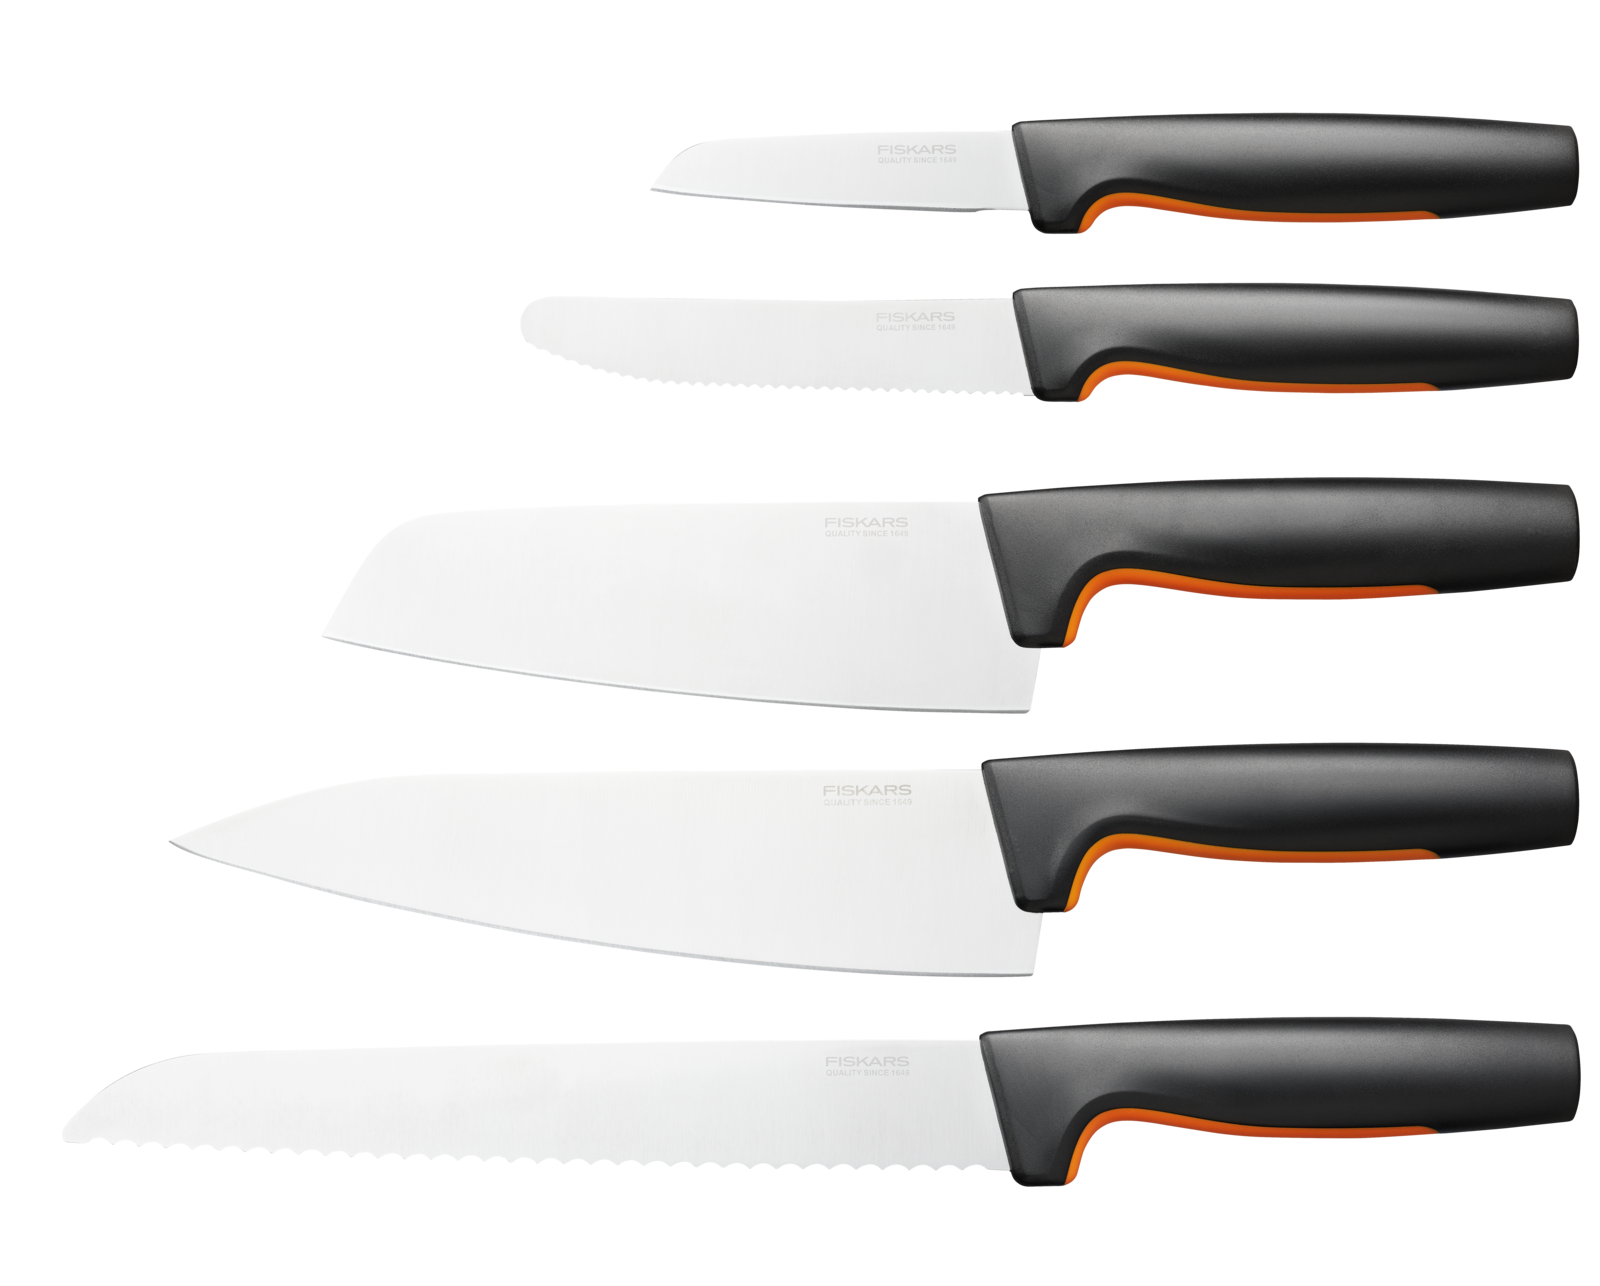 Sada nožů Fiskars, 5 ks - 1057558